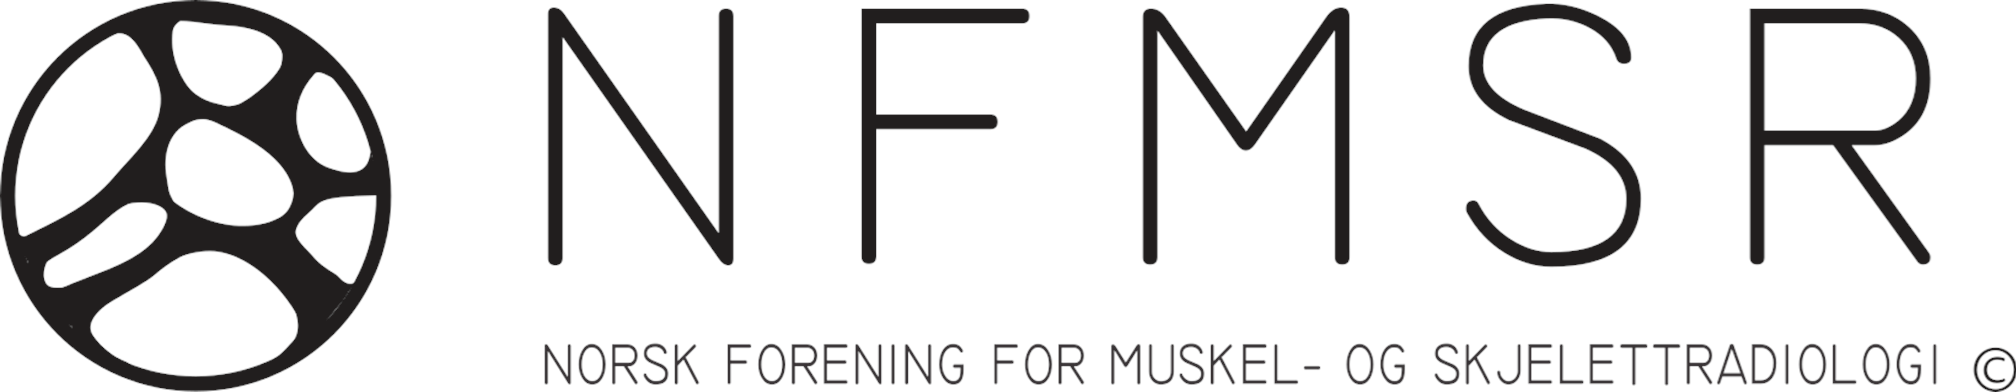 NFMSR logo